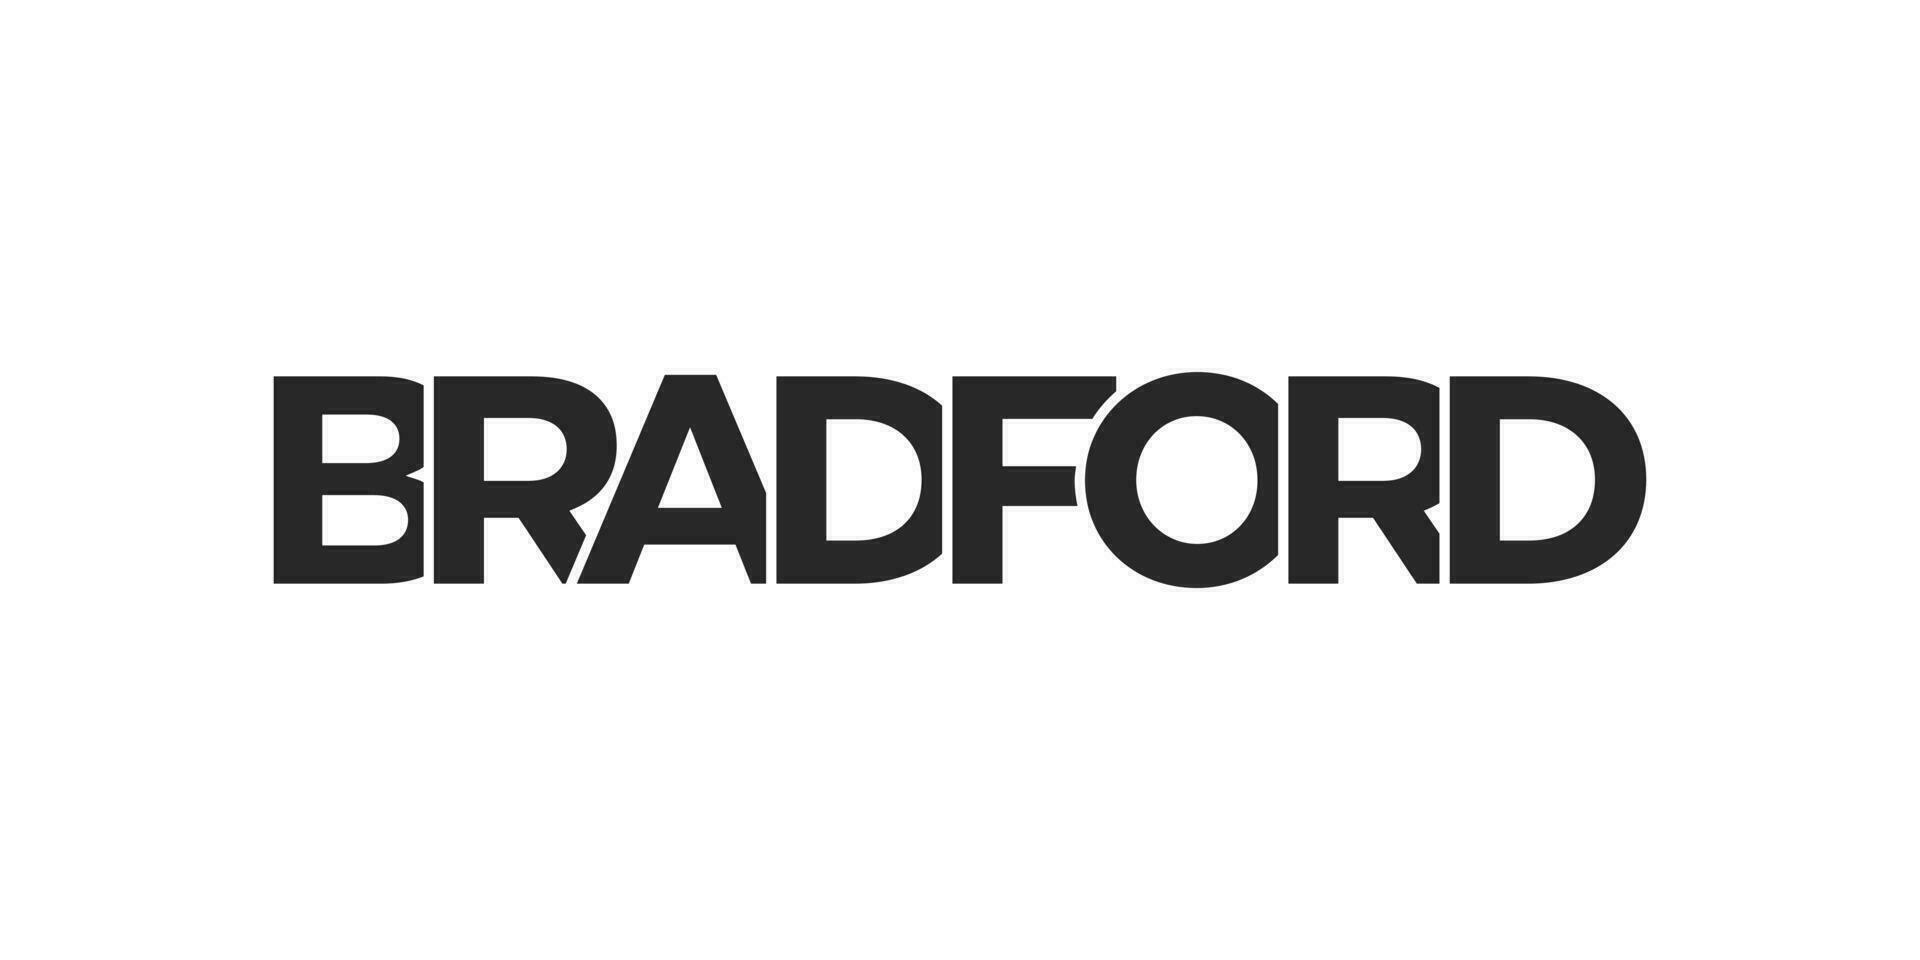 Bradford ciudad en el unido Reino ese ofertas un único mezcla de urbano y histórico puntos de referencia el diseño caracteristicas un geométrico estilo ilustración con negrita tipografía en un moderno vector